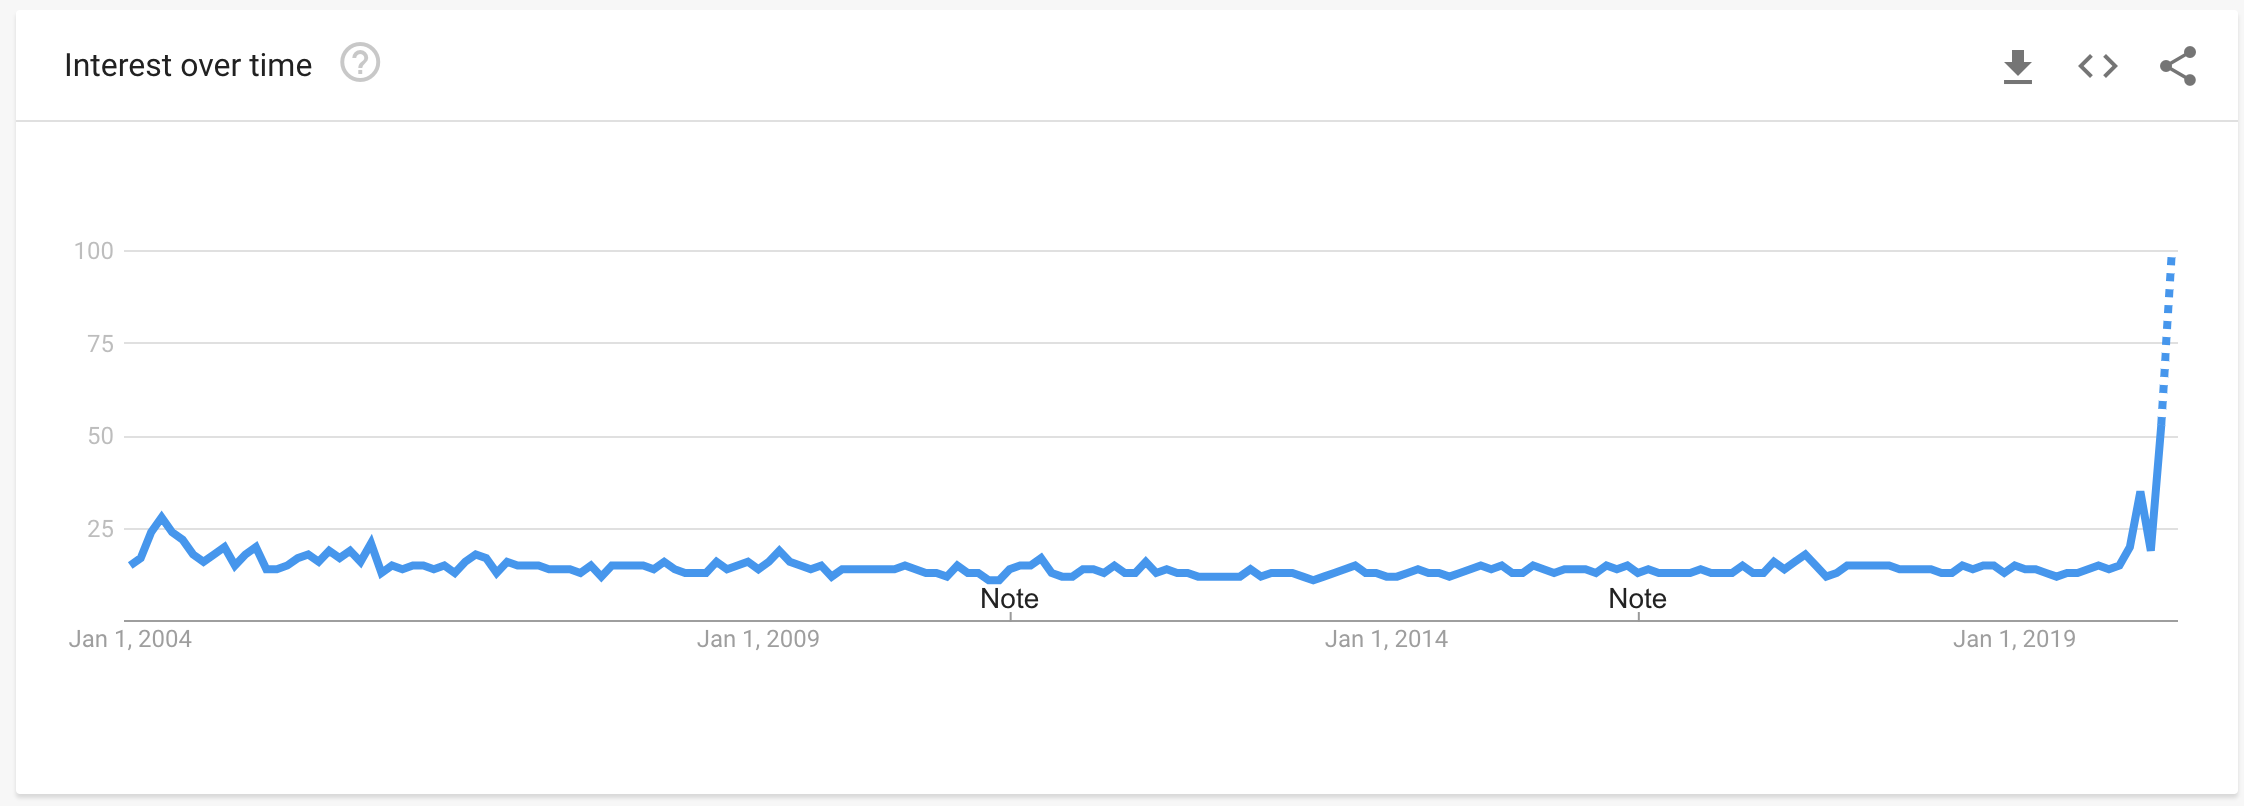 [Update: Even higher] As pesquisas do Google por 'boas notícias' estão em um nível histórico 1